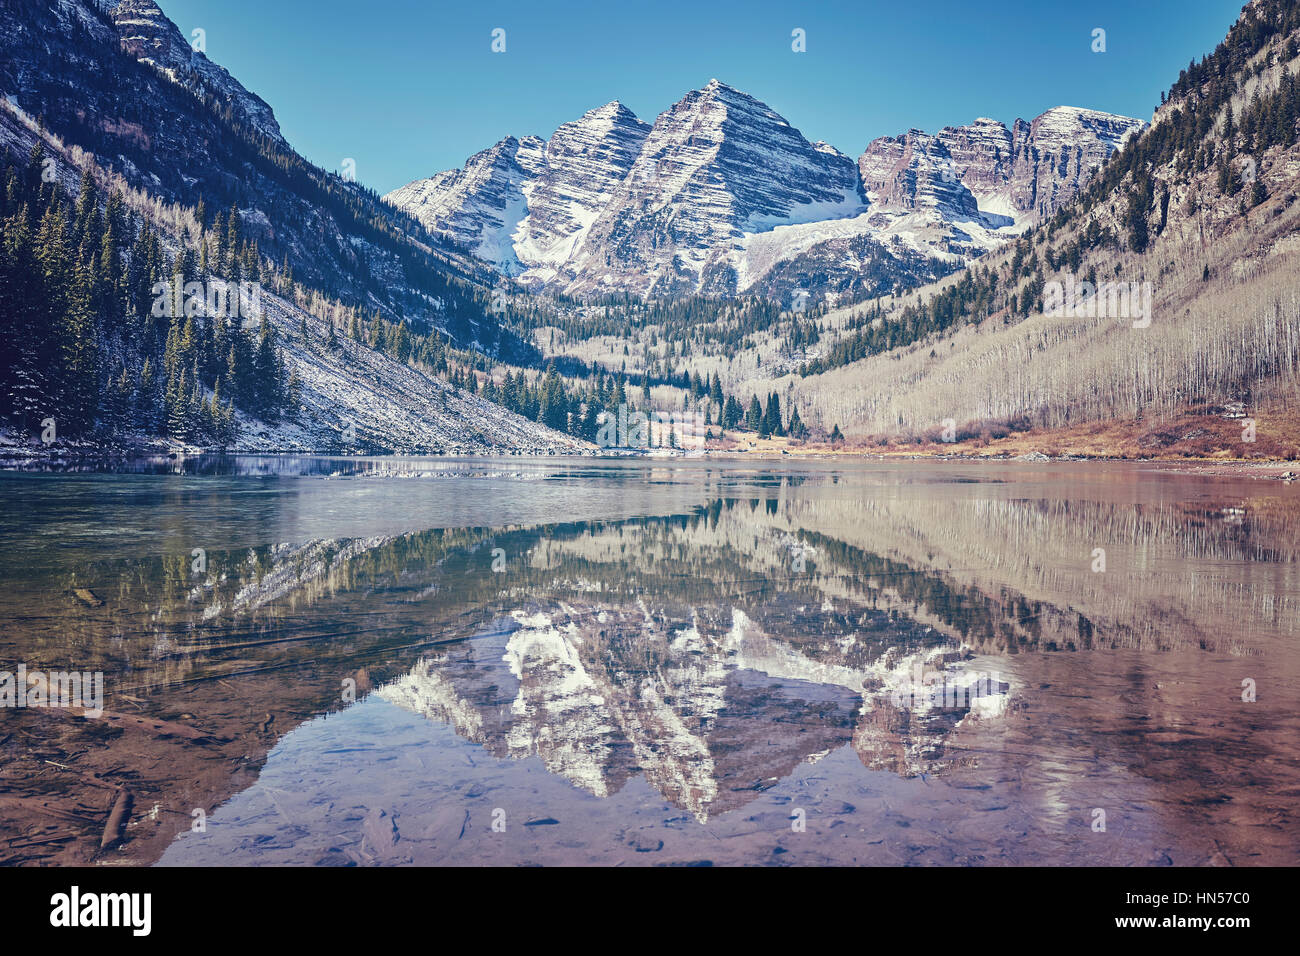 Couleur marron aux couleurs rétro Bells mountain lake landscape, Aspen dans le Colorado aux Etats-Unis. Banque D'Images